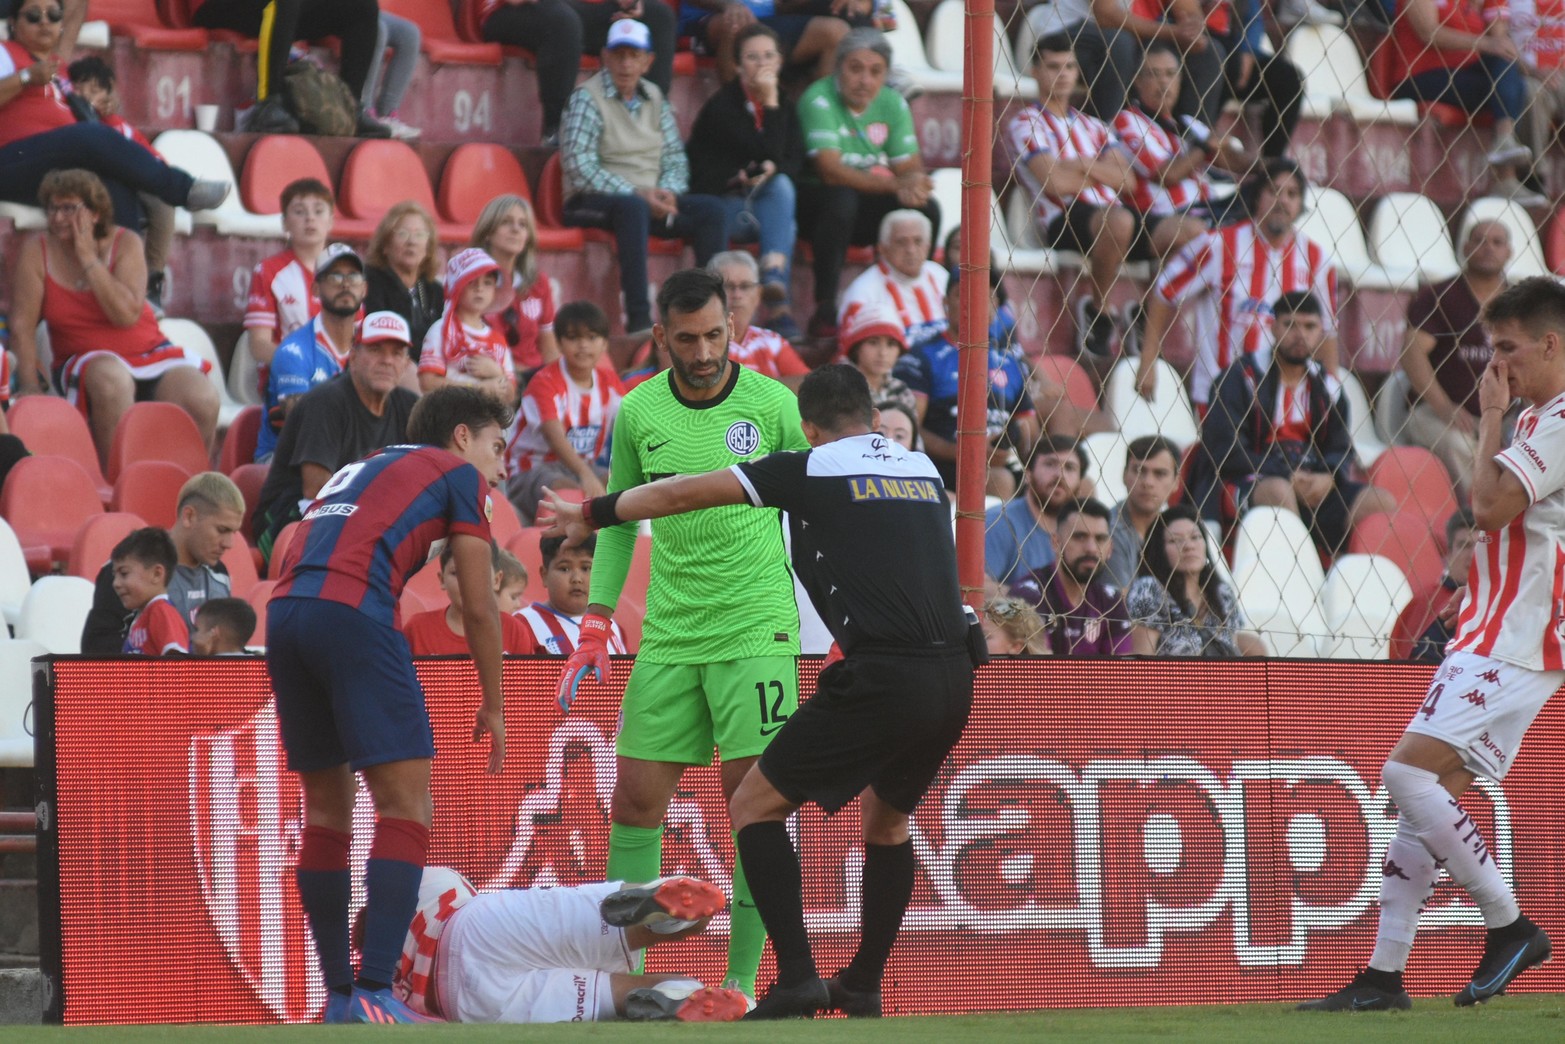 Mala suerte. El jugador de Unión Gastón González sufrió una rotura de ligamentos, que lo alejaría varios meses de una cancha de fútbol.